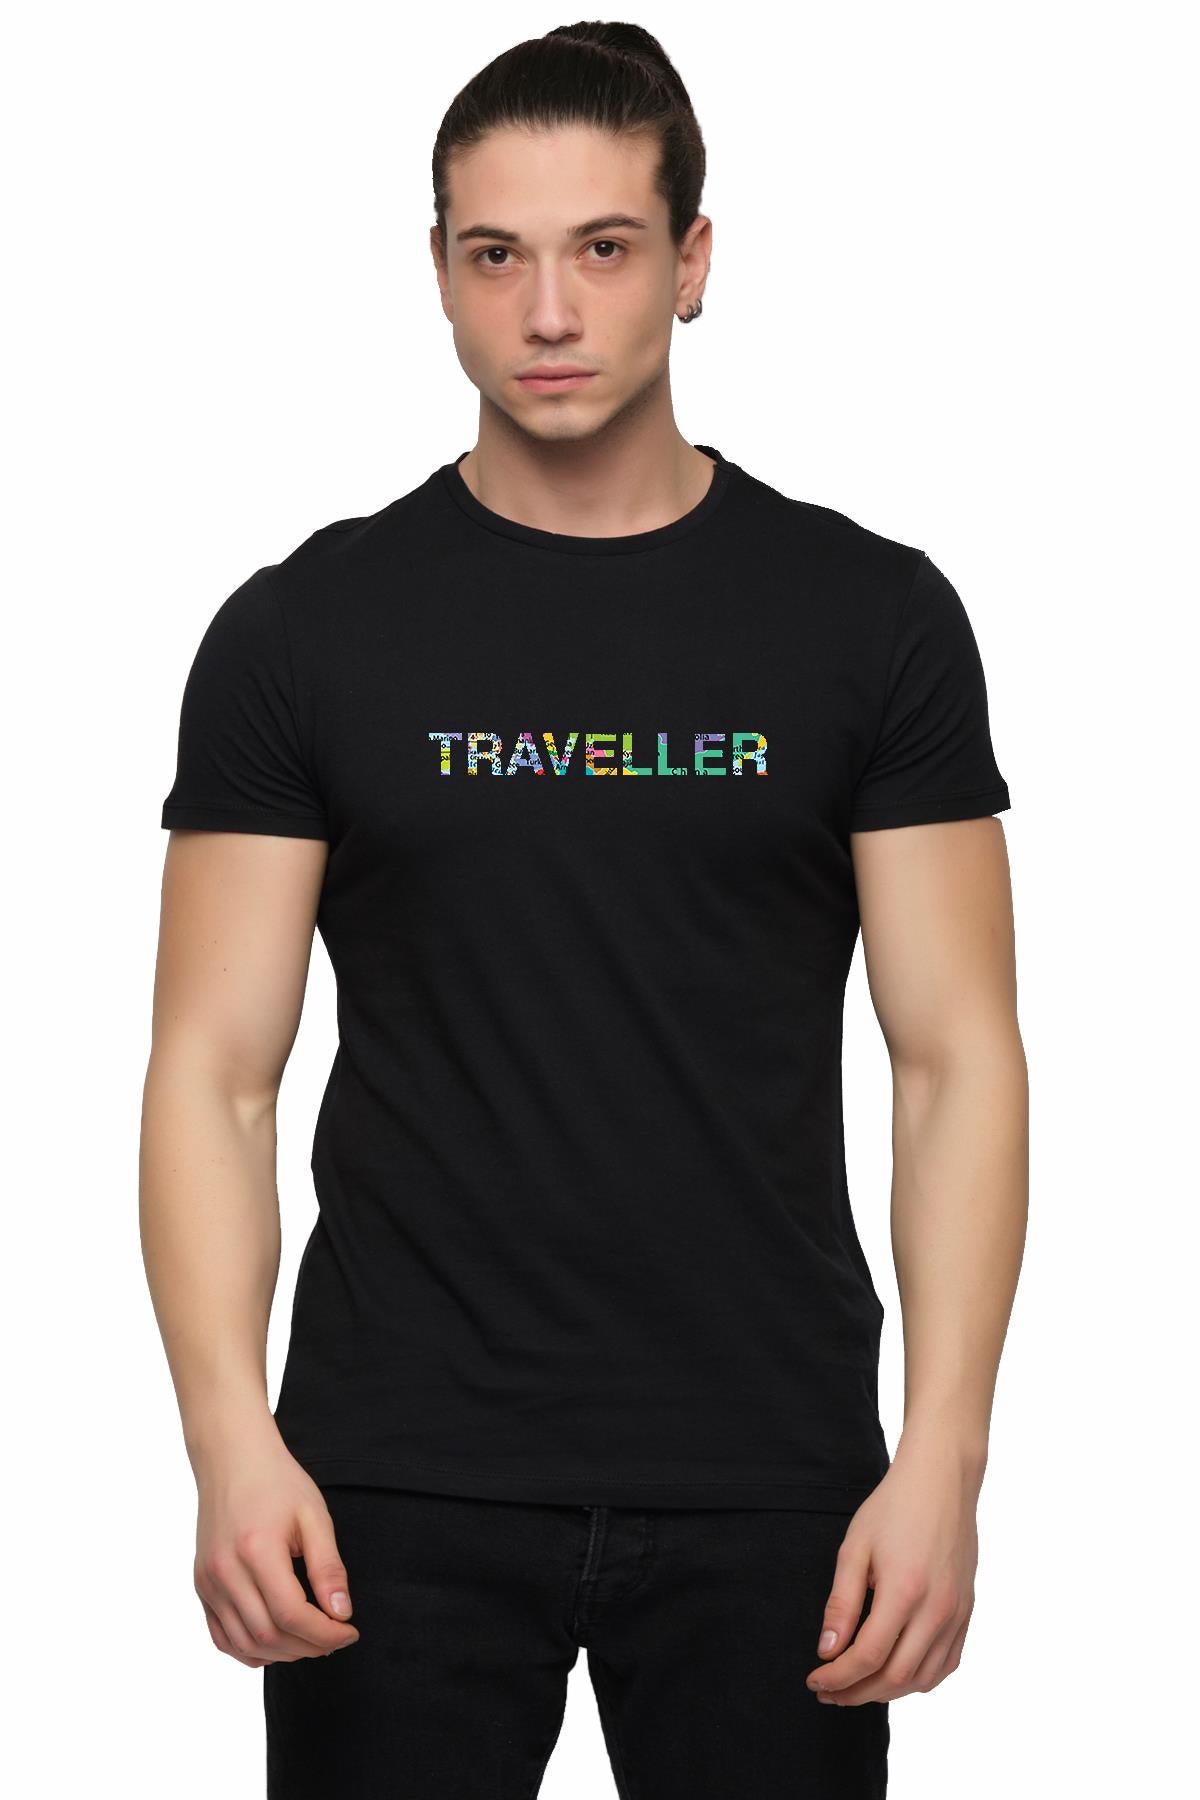 Traveler Printed Cotton Men's T -shirt